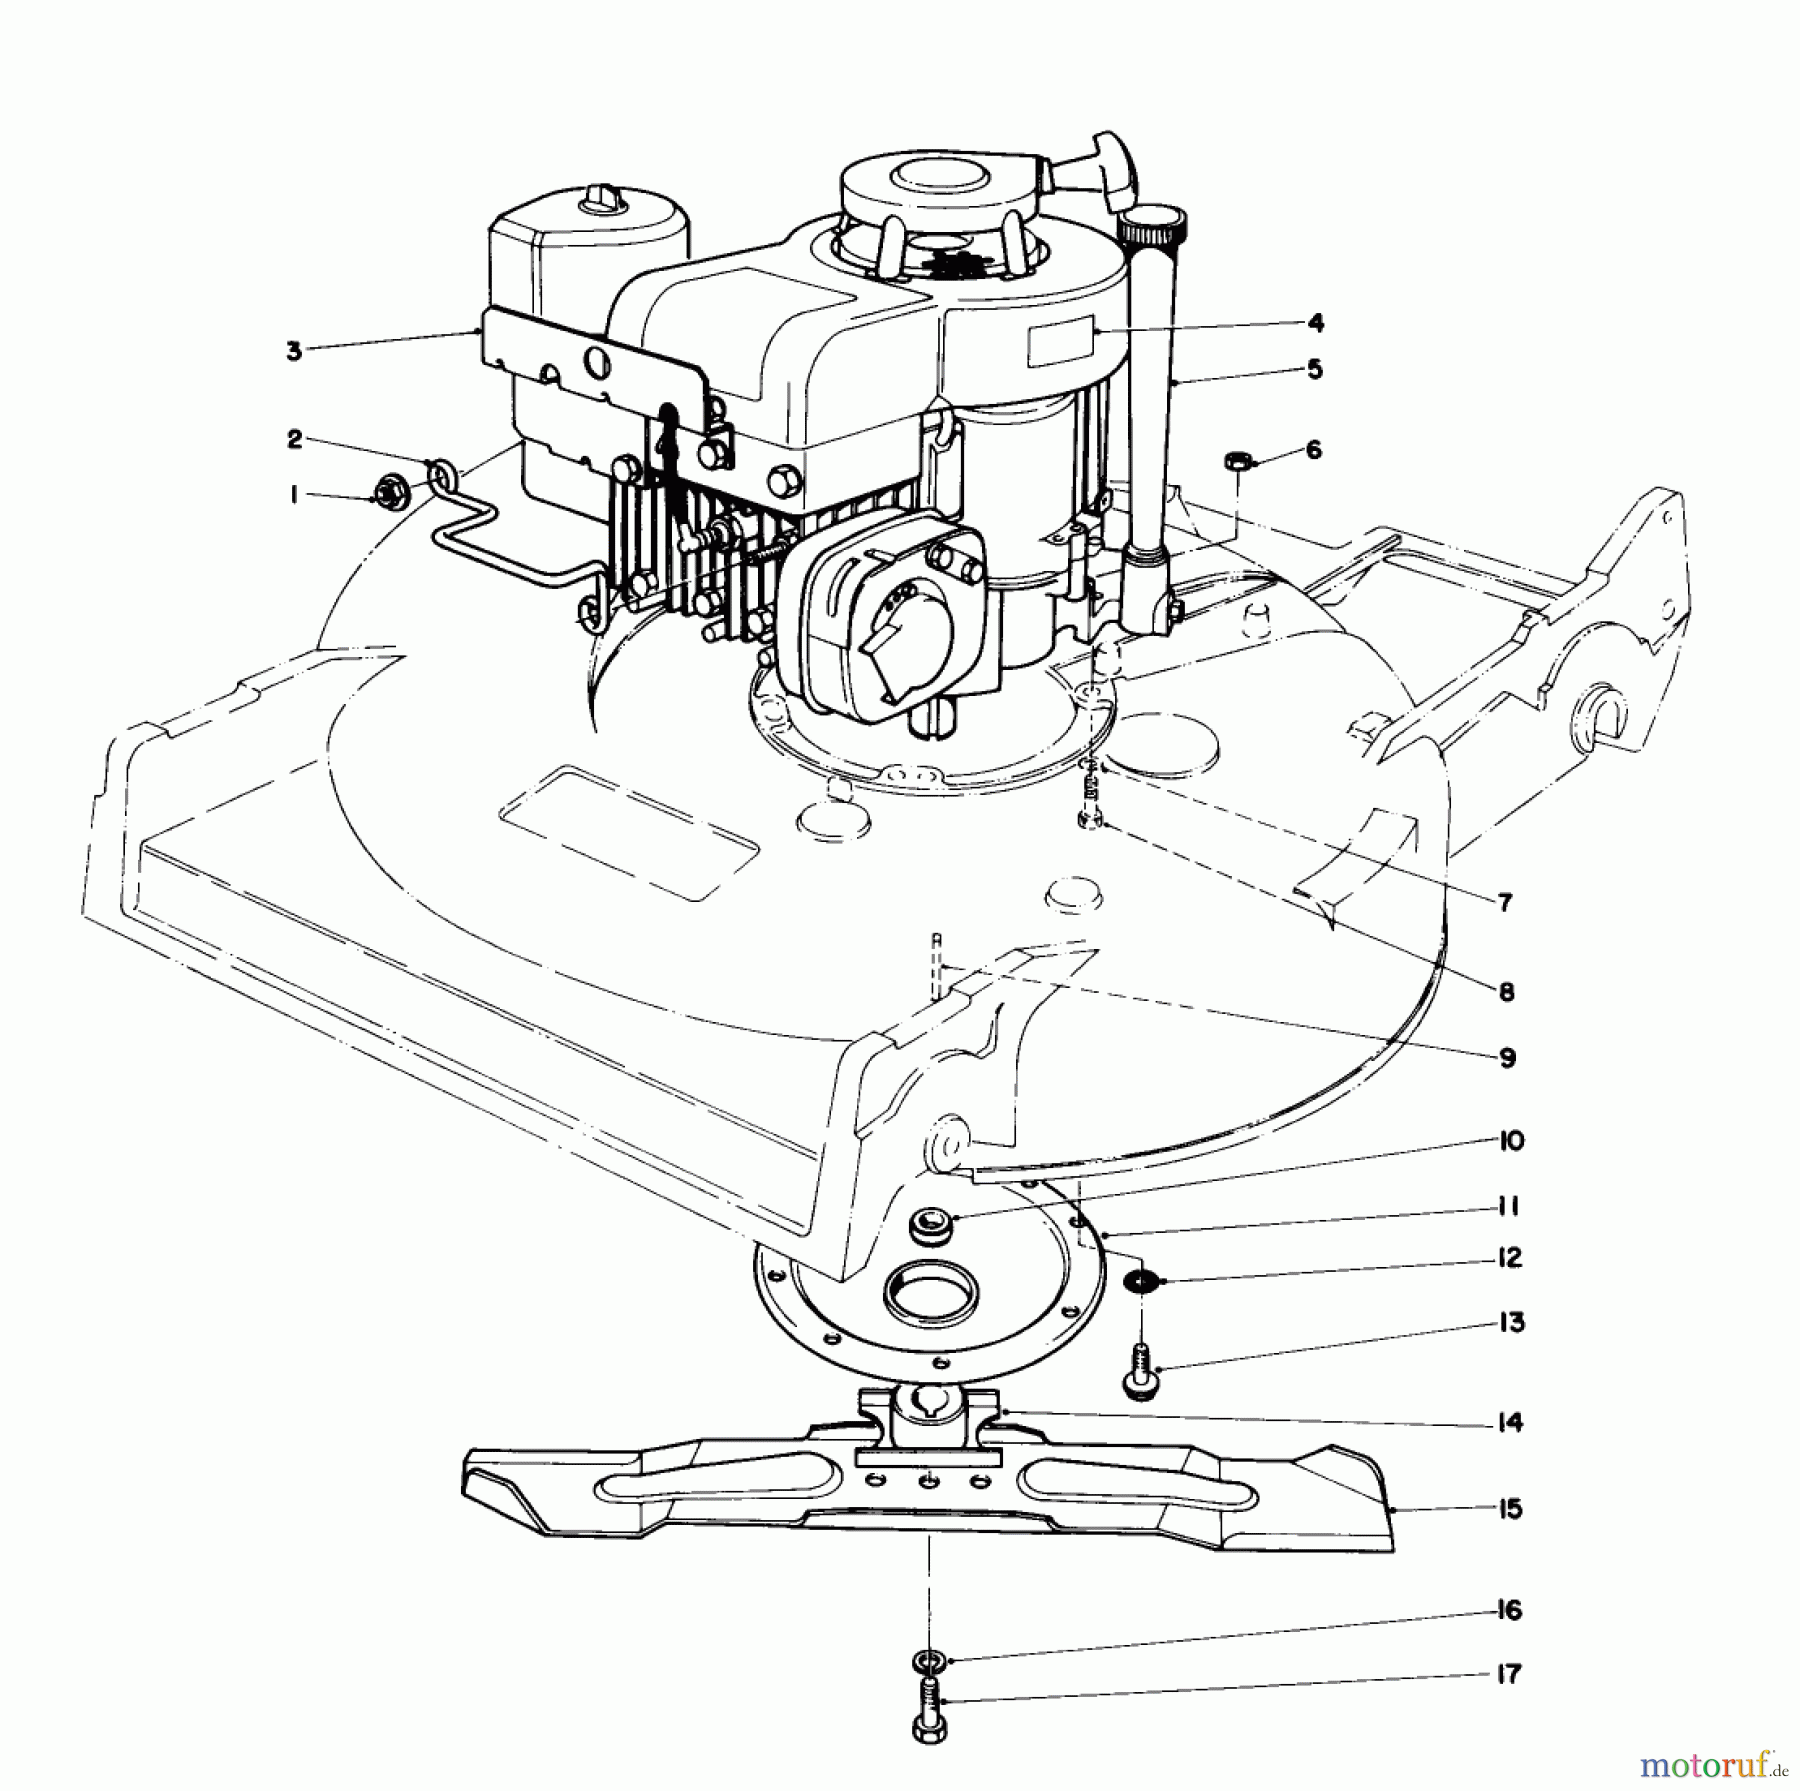  Toro Neu Mowers, Walk-Behind Seite 2 22015 - Toro Lawnmower, 1986 (6000001-6999999) ENGINE ASSEMBLY (MODEL 22015)